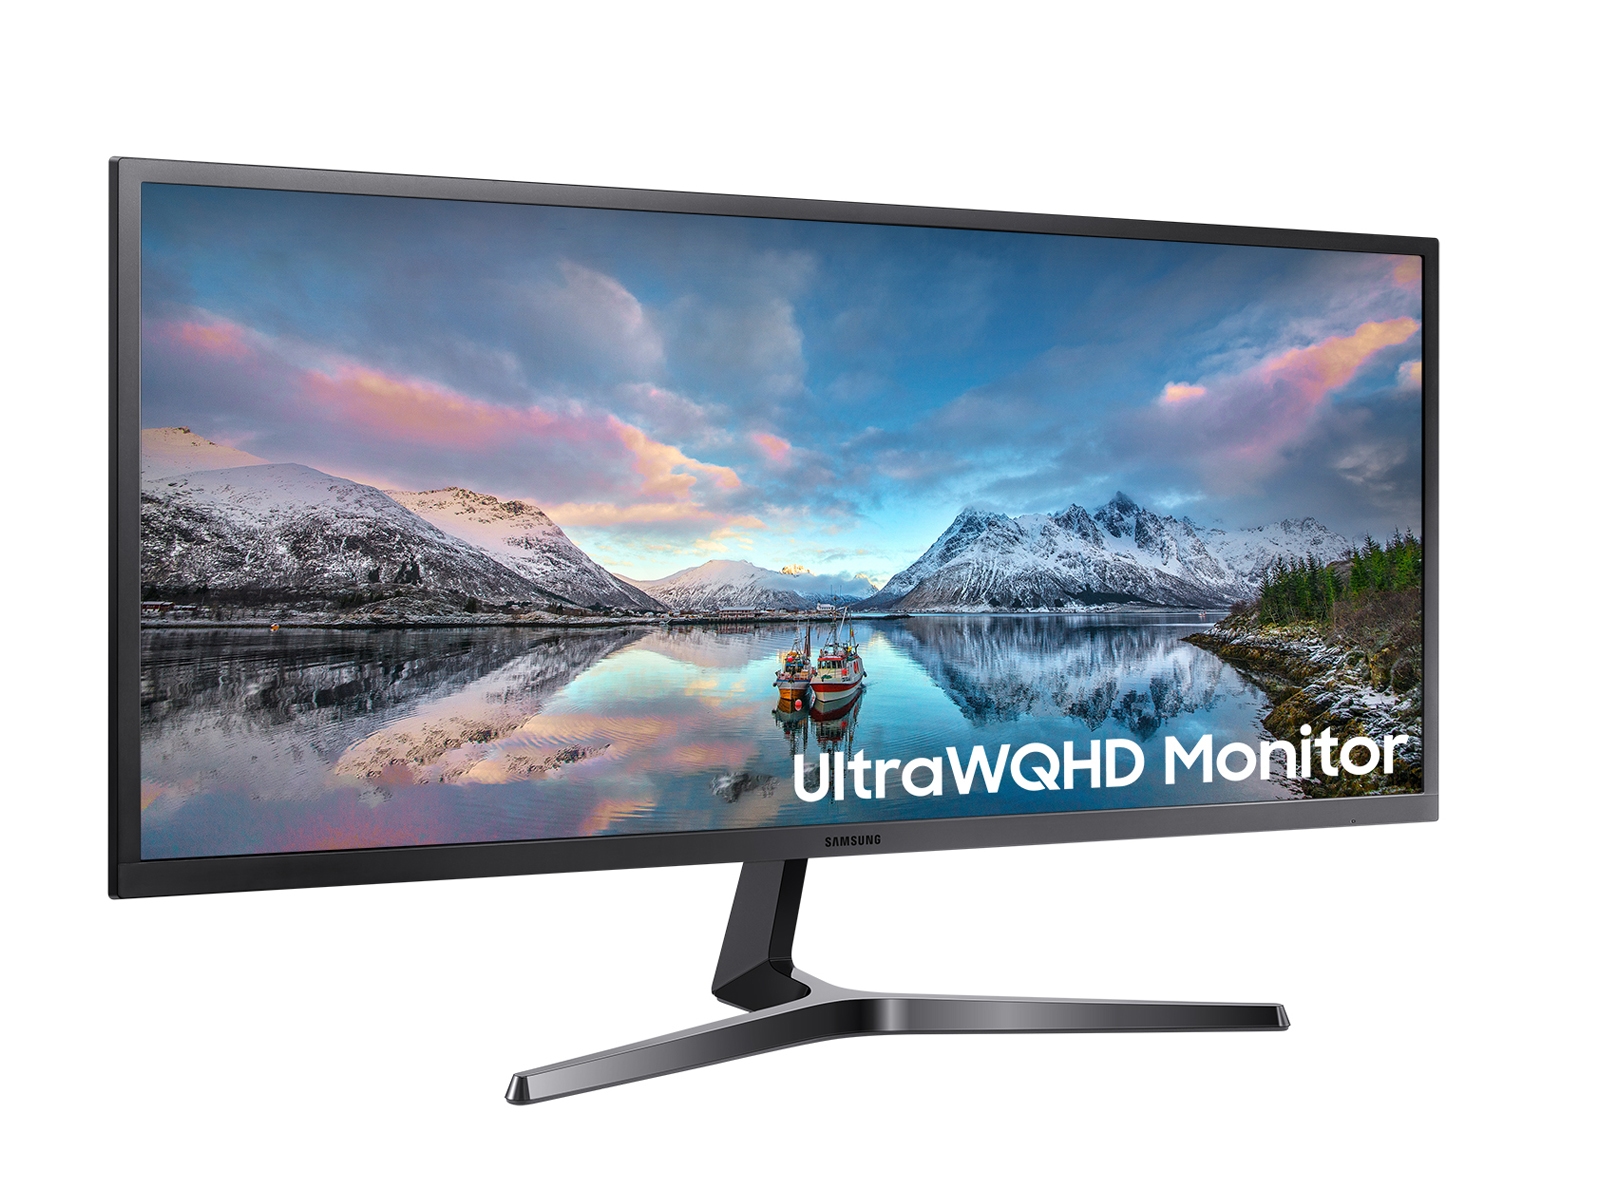 SJ55W Ultra WQHD Monitor mang đến cho bạn một khả năng hiển thị tuyệt vời với độ phân giải đáng kinh ngạc. Chiếc màn hình này có tính năng cao cấp có thể xoay ngang với góc nhìn rộng giúp bạn xem hình ảnh và video với độ sắc nét tuyệt vời mà không mỏi mắt. Hãy xem hình ảnh để trải nghiệm thực tế!